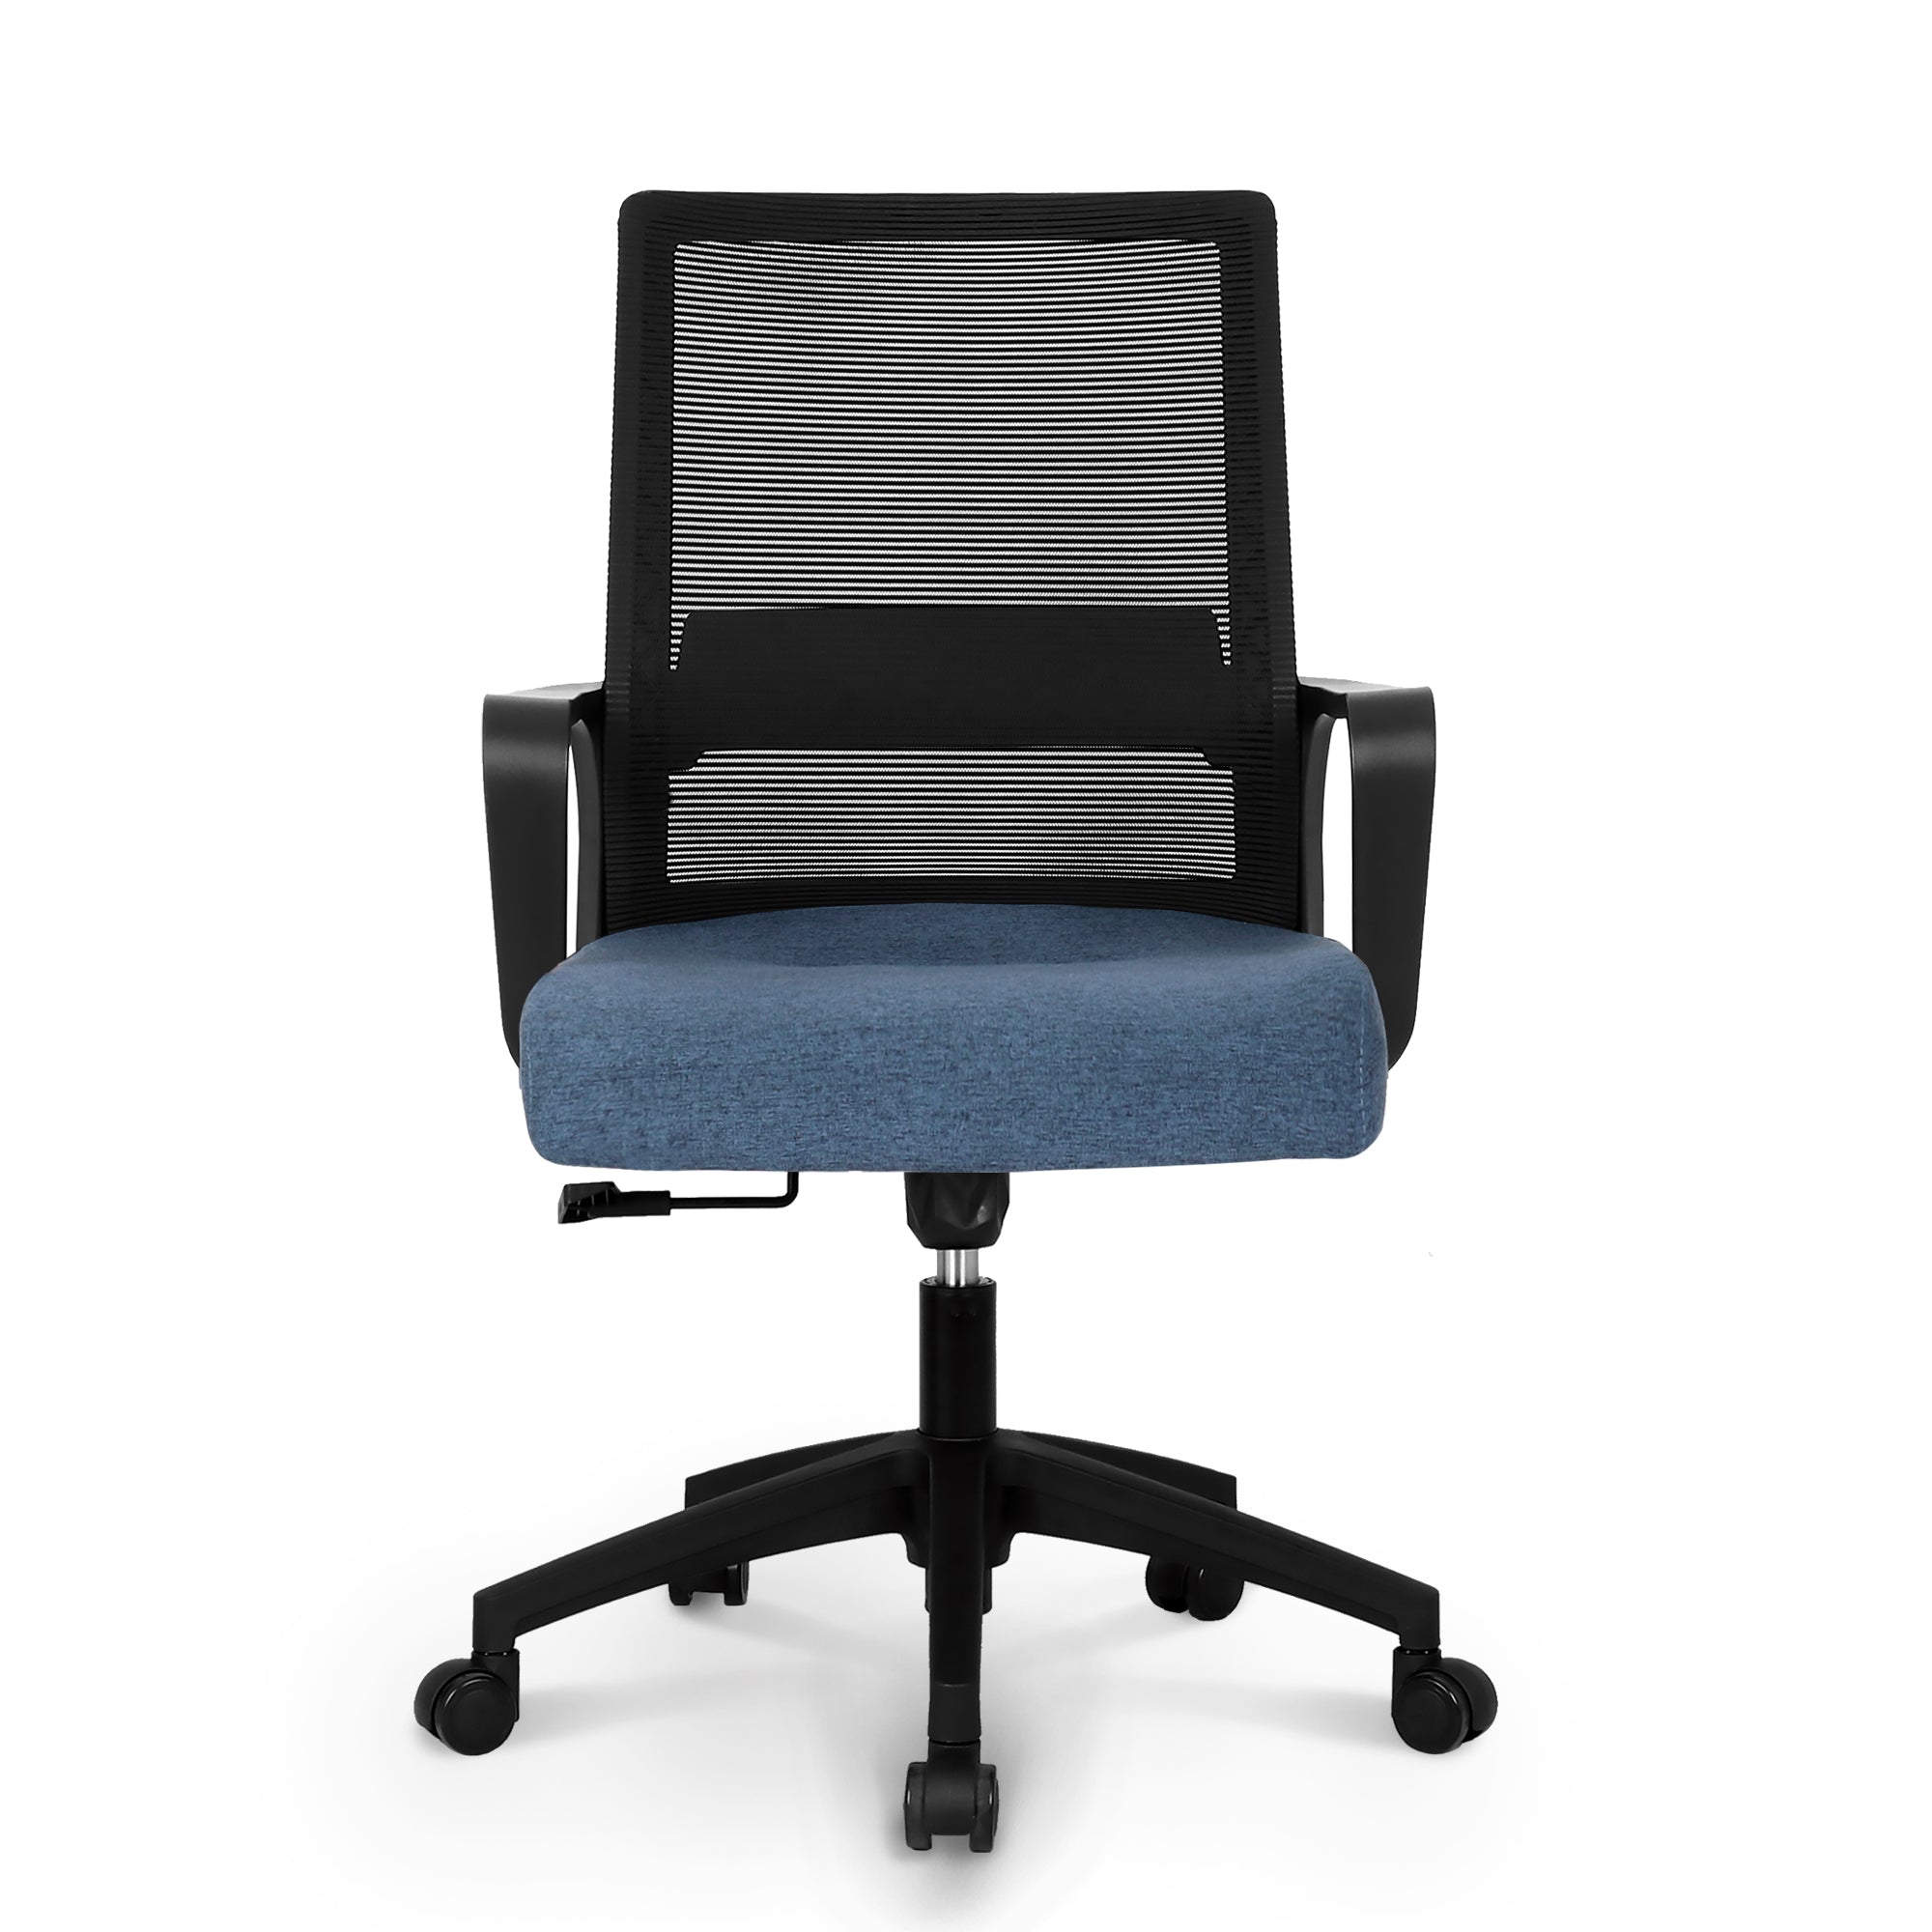 801 black frame mesh office chair